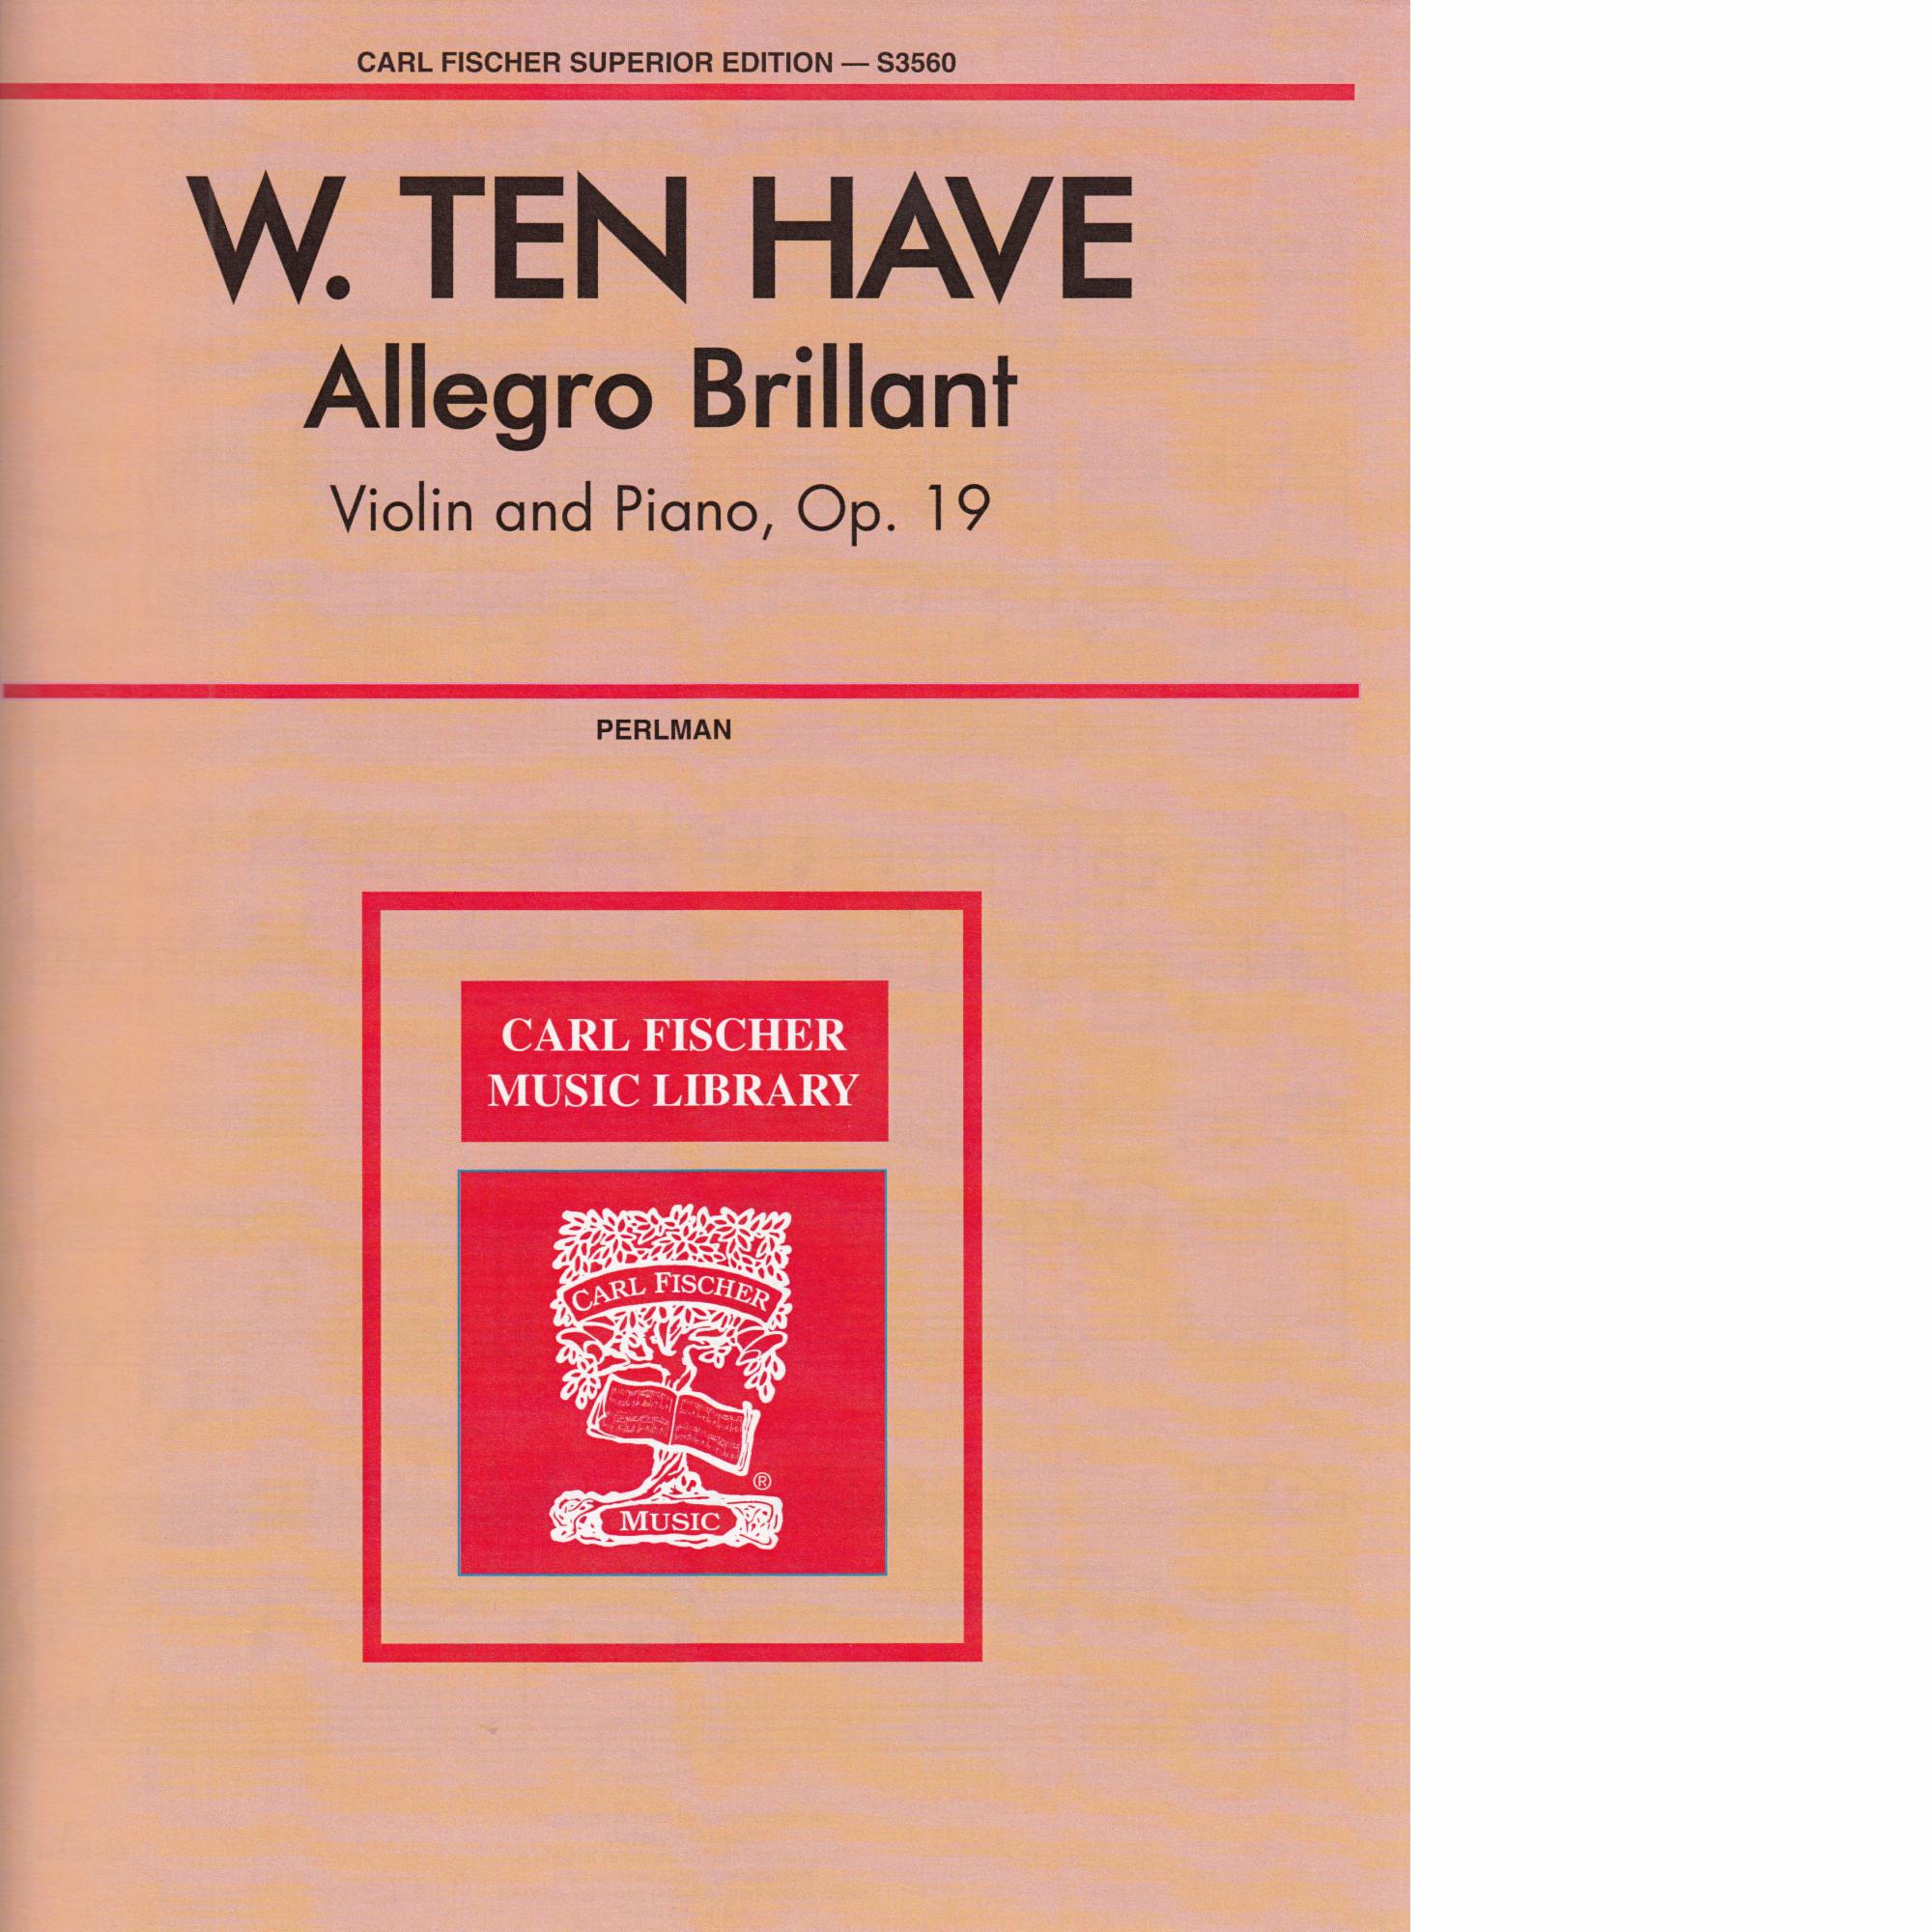 Allegro Brillante, Op.19 for Violin and Piano